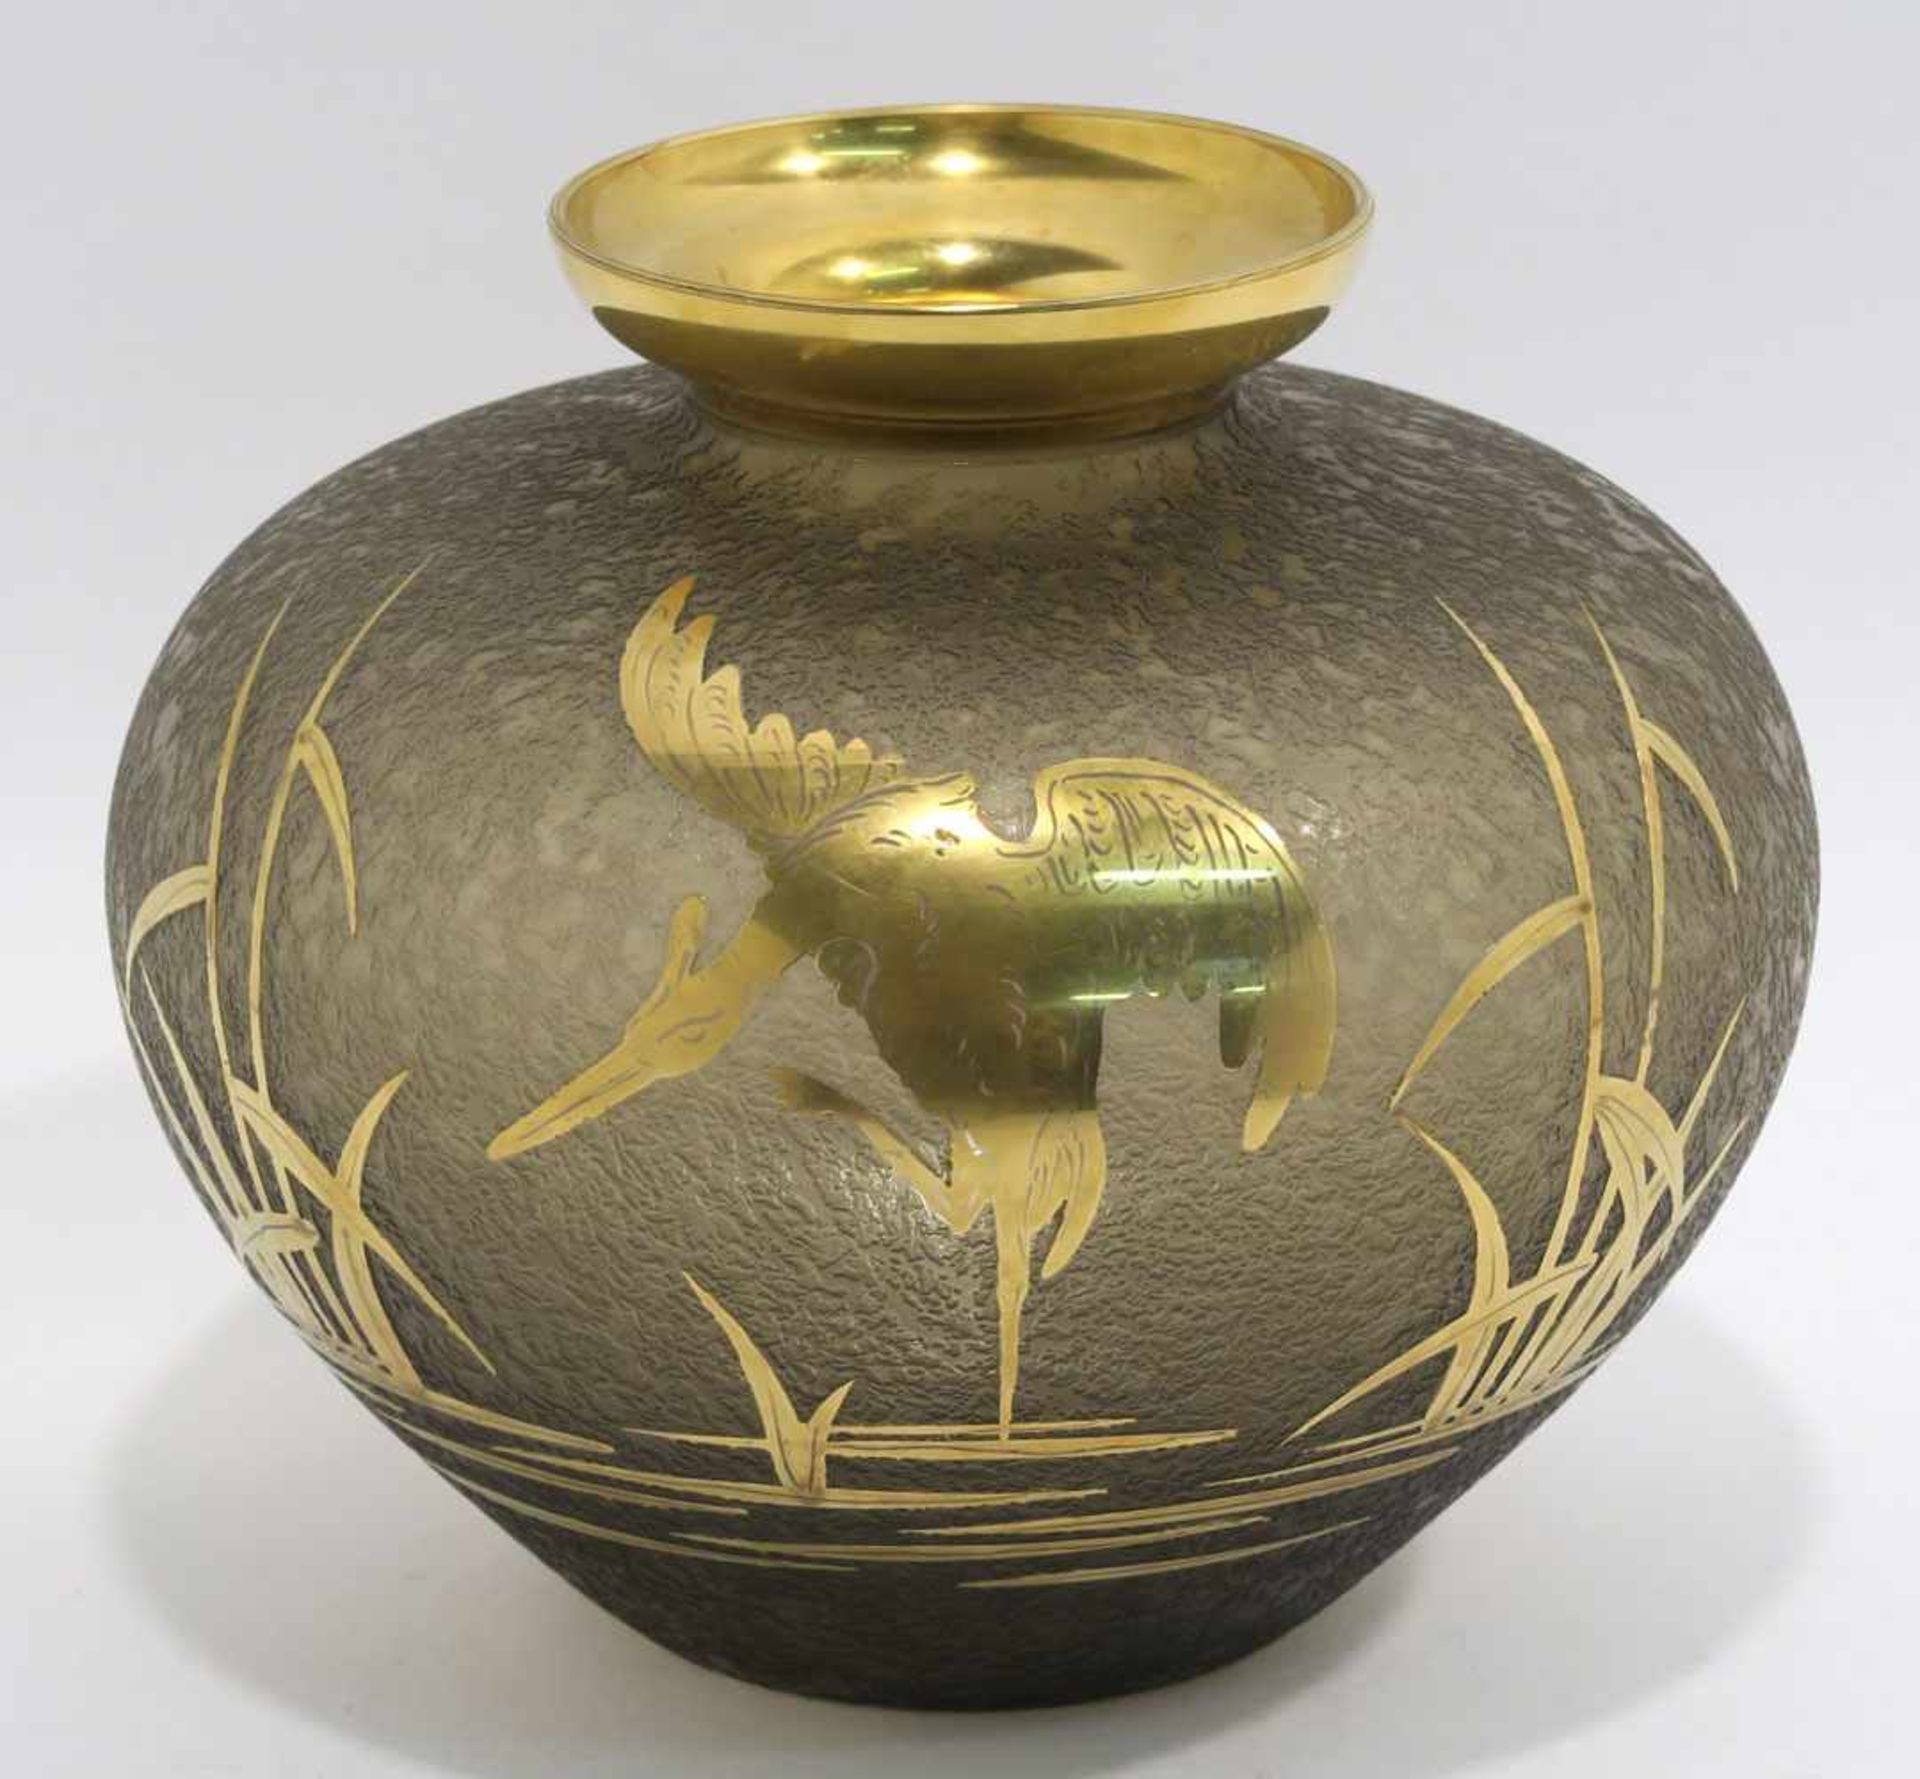 VaseRauchgraues Eisglas mit goldfarbenem Dekor: Kranich im Schilf. H. 13,5 cm.